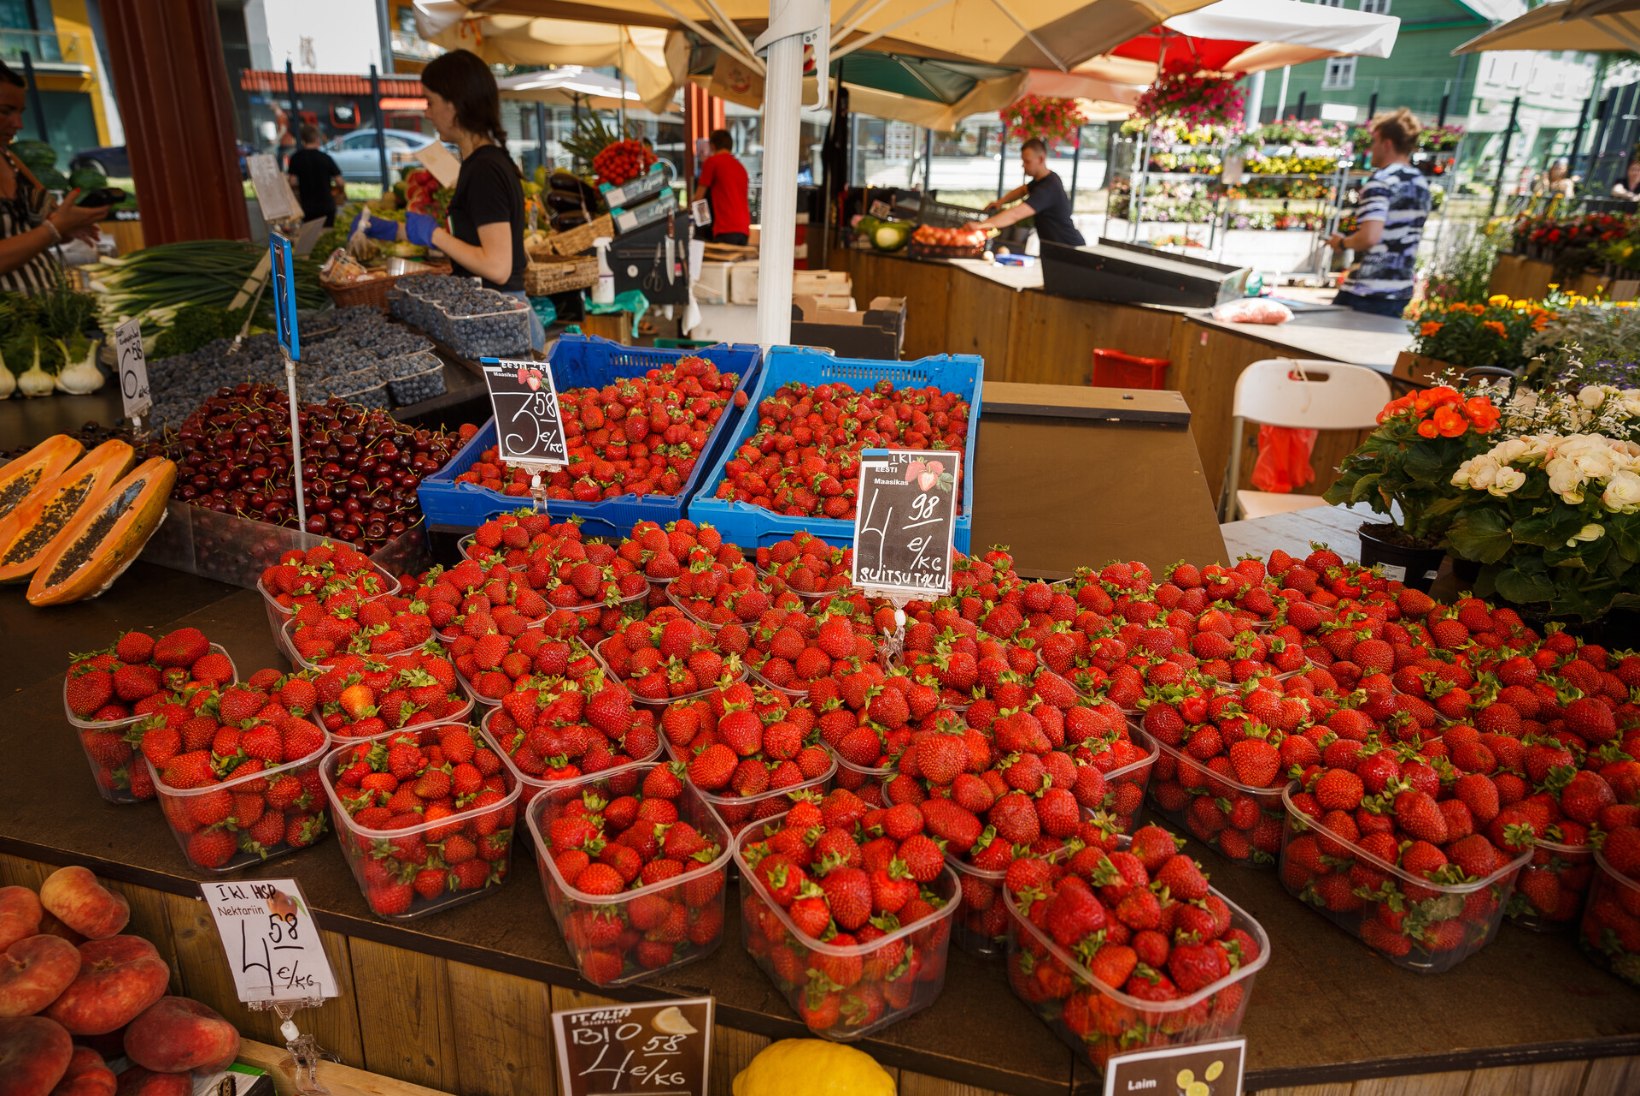 GALERII | USKUMATU HINNALANGUS: kilo Eesti maasikaid saab vähem kui 4 euroga, ise korjates veelgi odavamalt